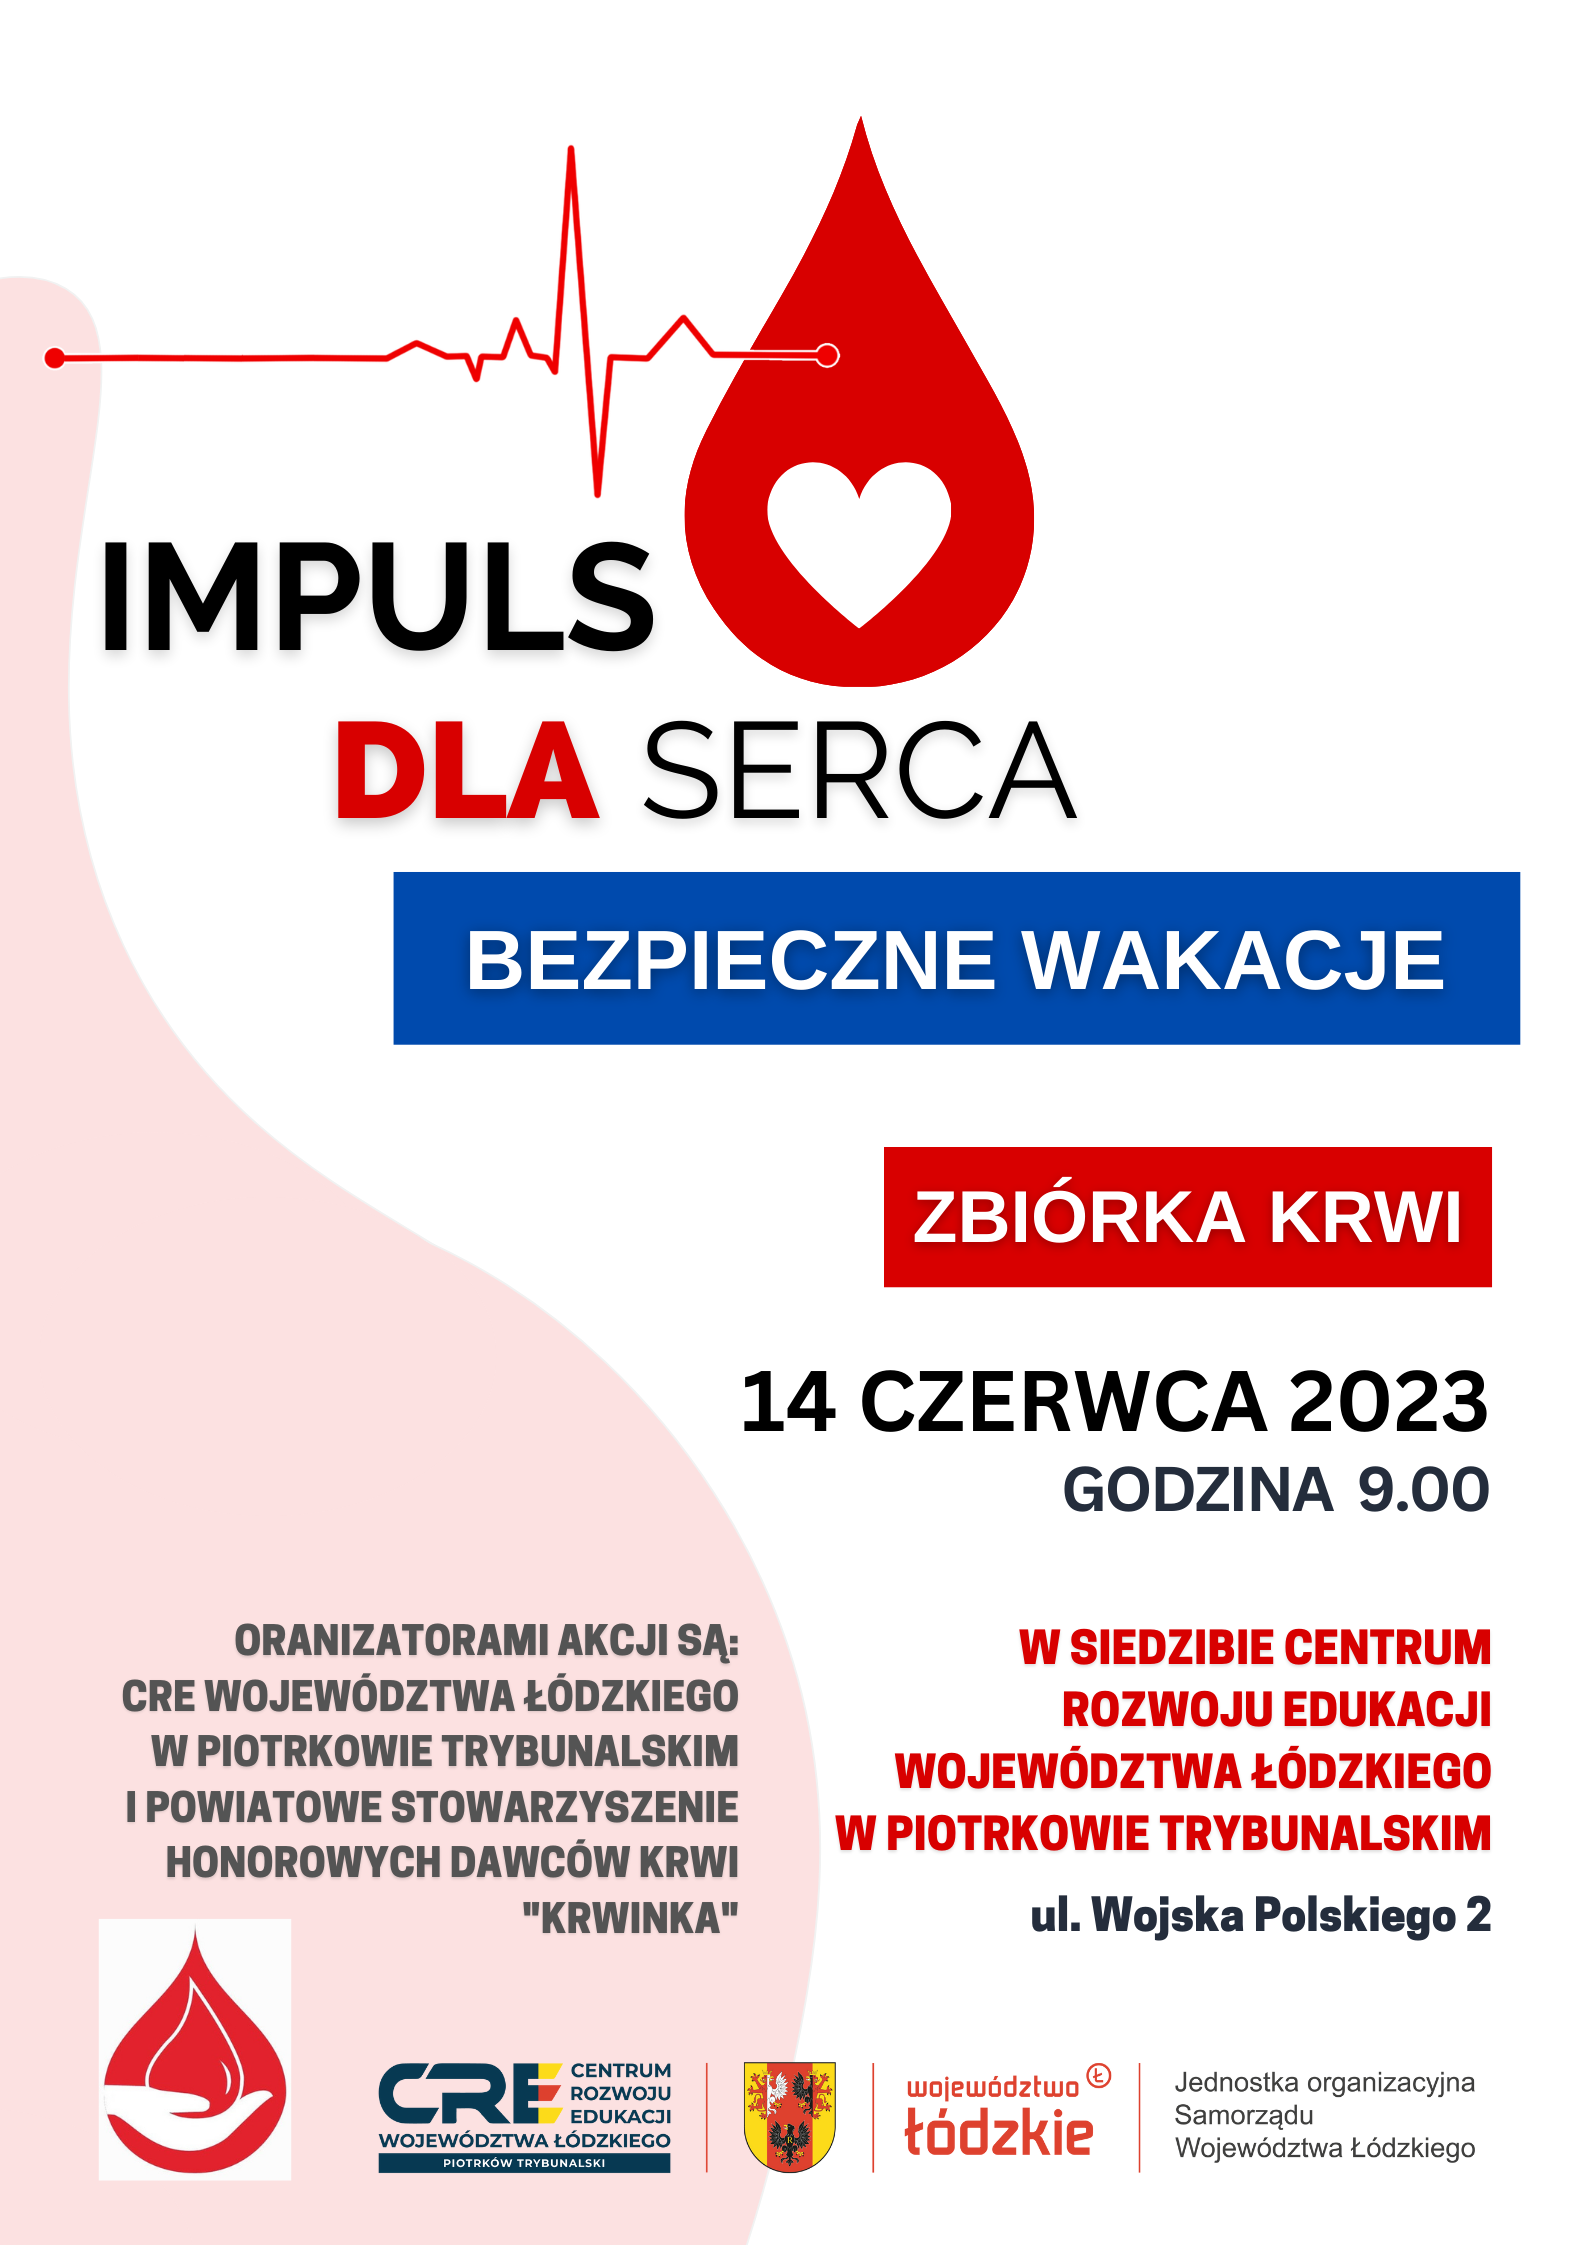 Kolejna zbiórka krwi w Centrum Rozwoju Edukacji Województwa Łódzkiego w Piotrkowie Trybunalskim już 14.06.2023 